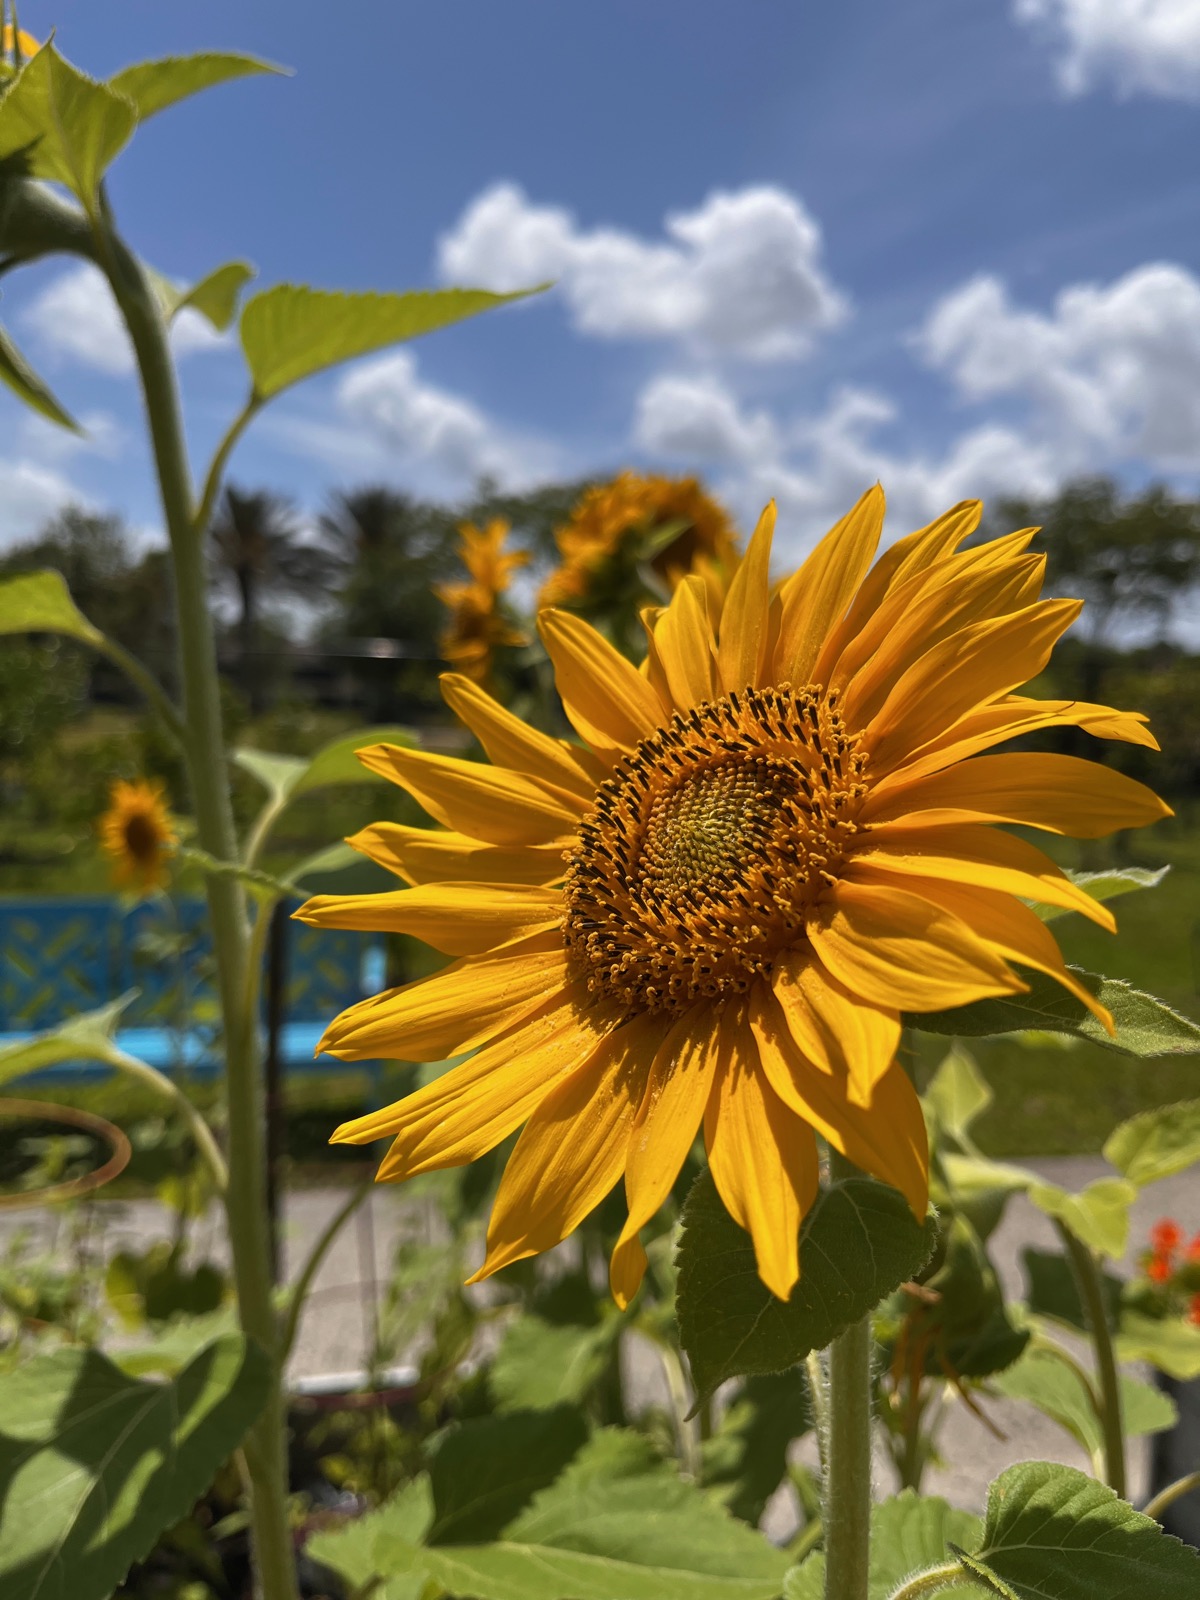 Closeup of a sunflower 